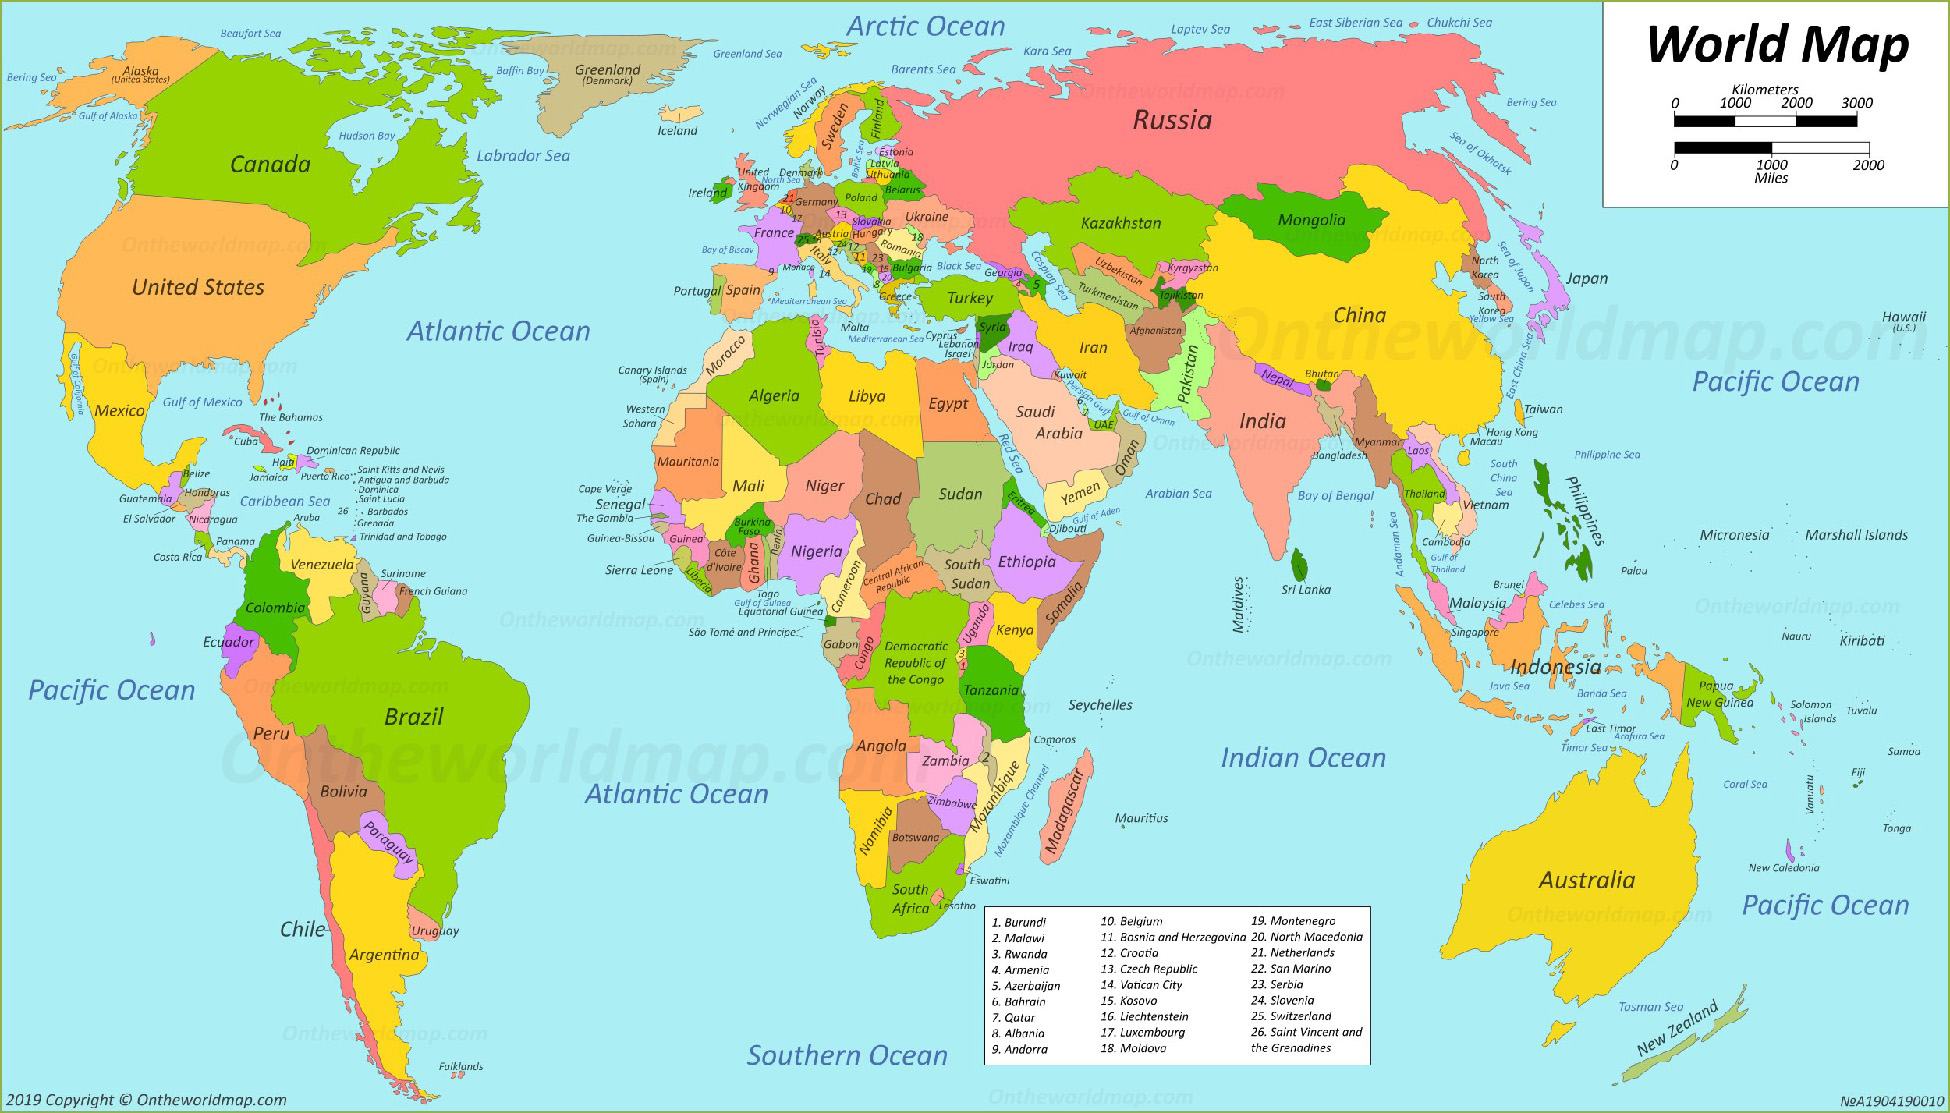 Bản đồ thế giới và các châu lục